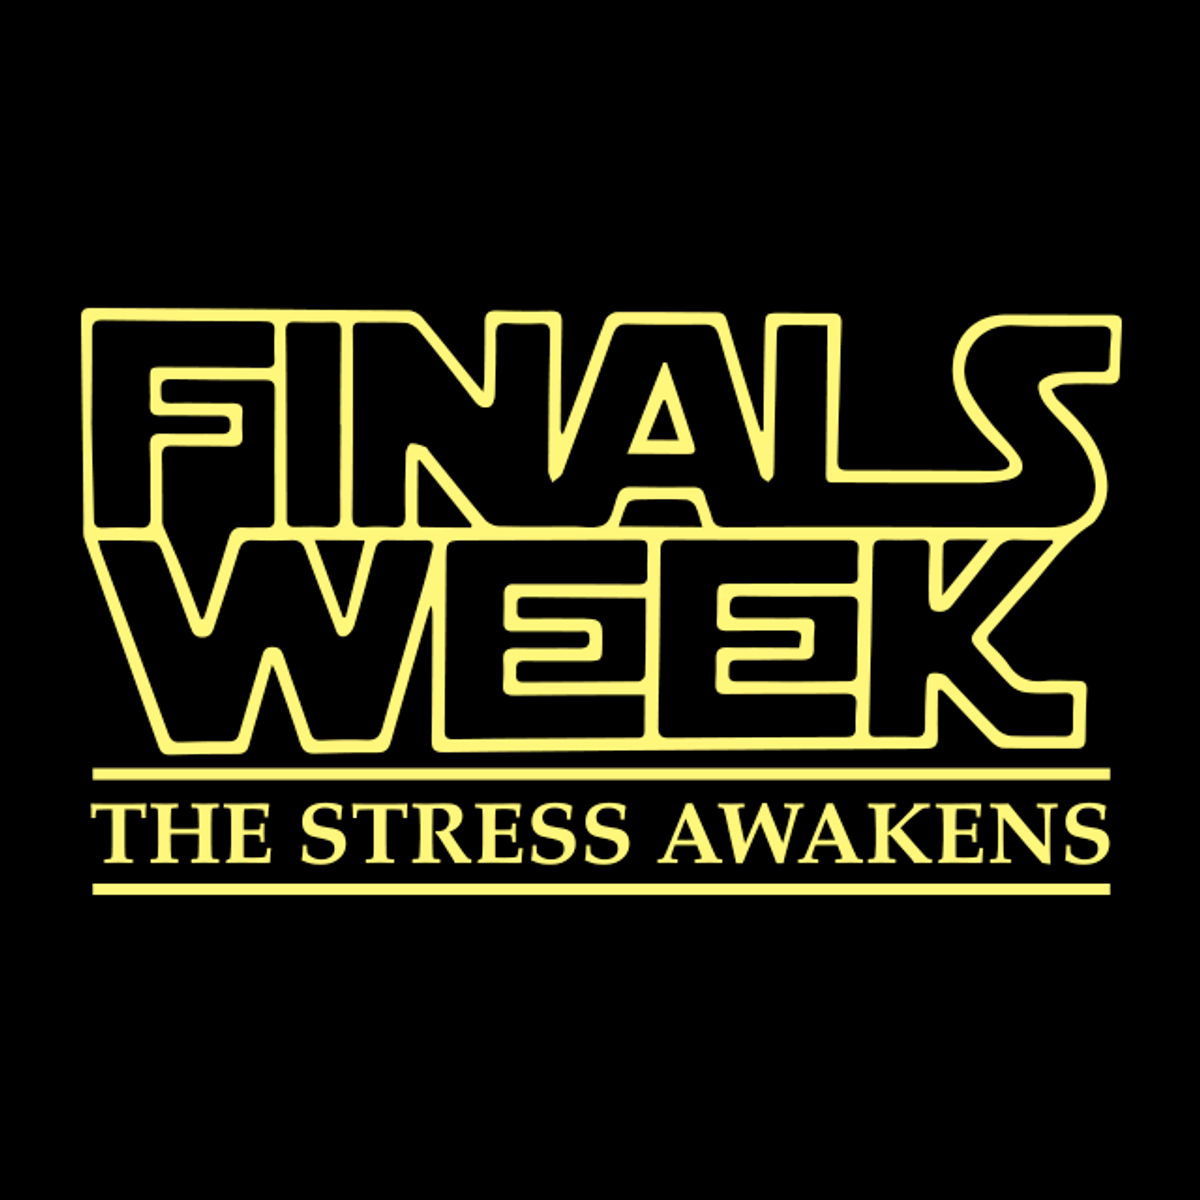 Finals Week: The Stress Awakens